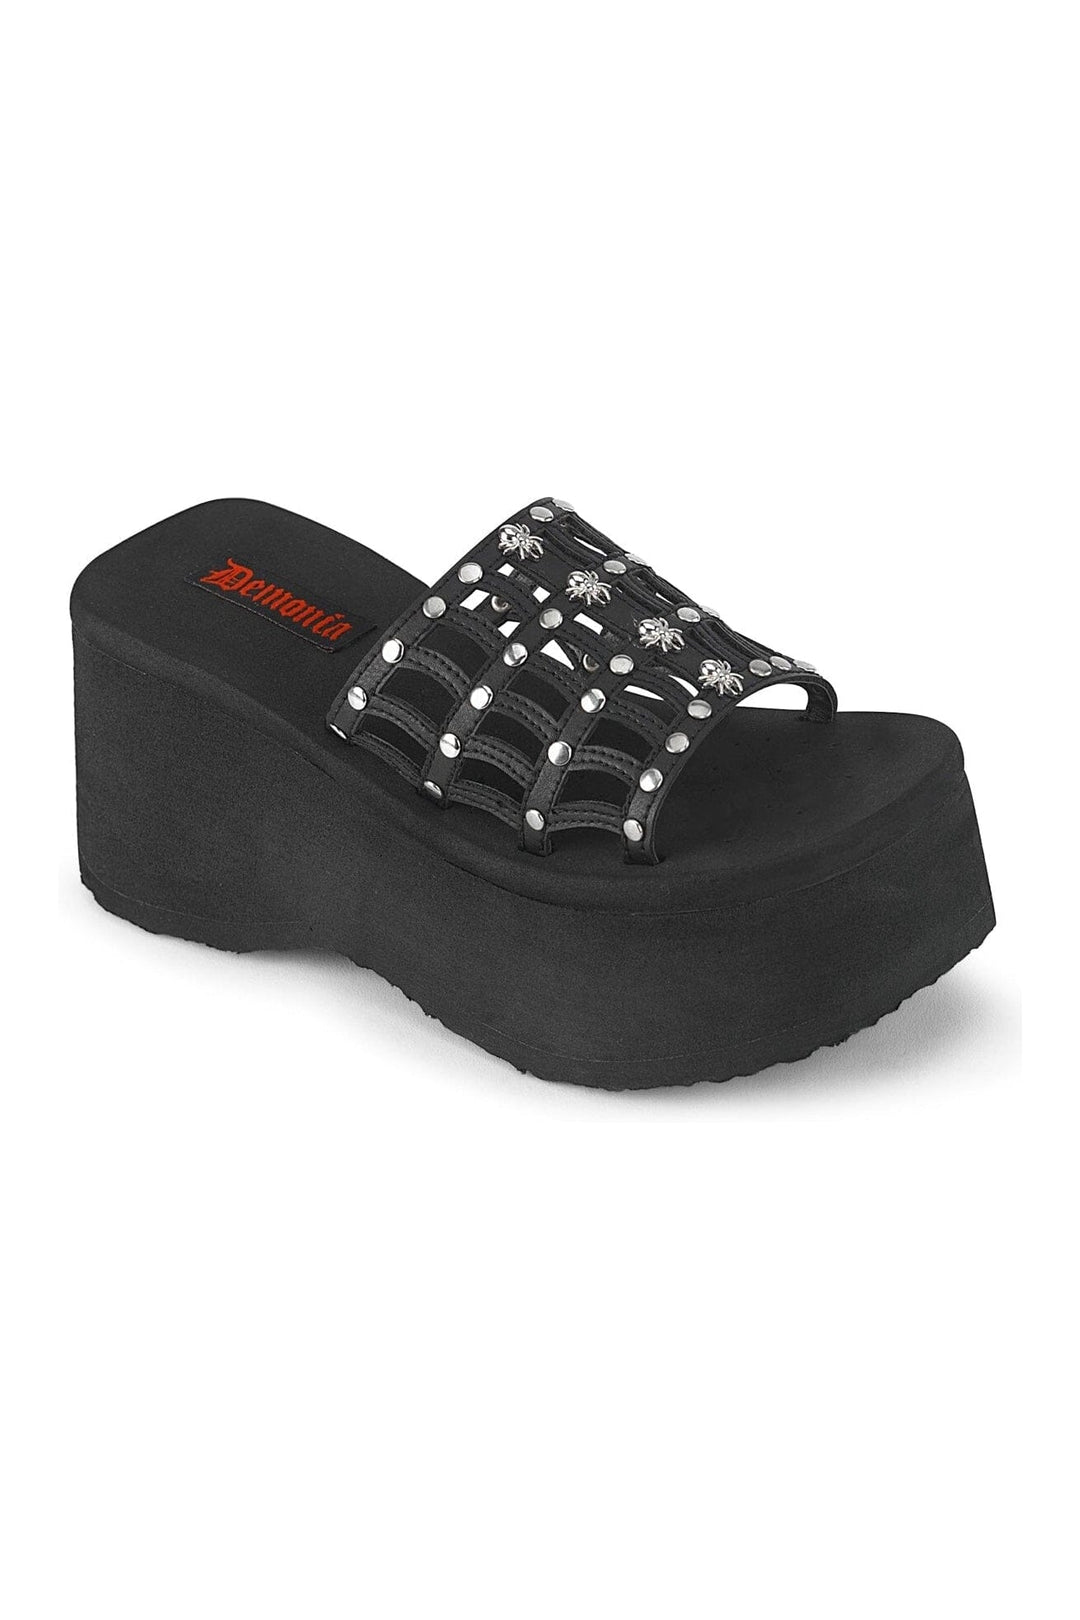 FUNN-13 Black Vegan Leather Slide-Slides-Demonia-Black-10-Vegan Leather-SEXYSHOES.COM